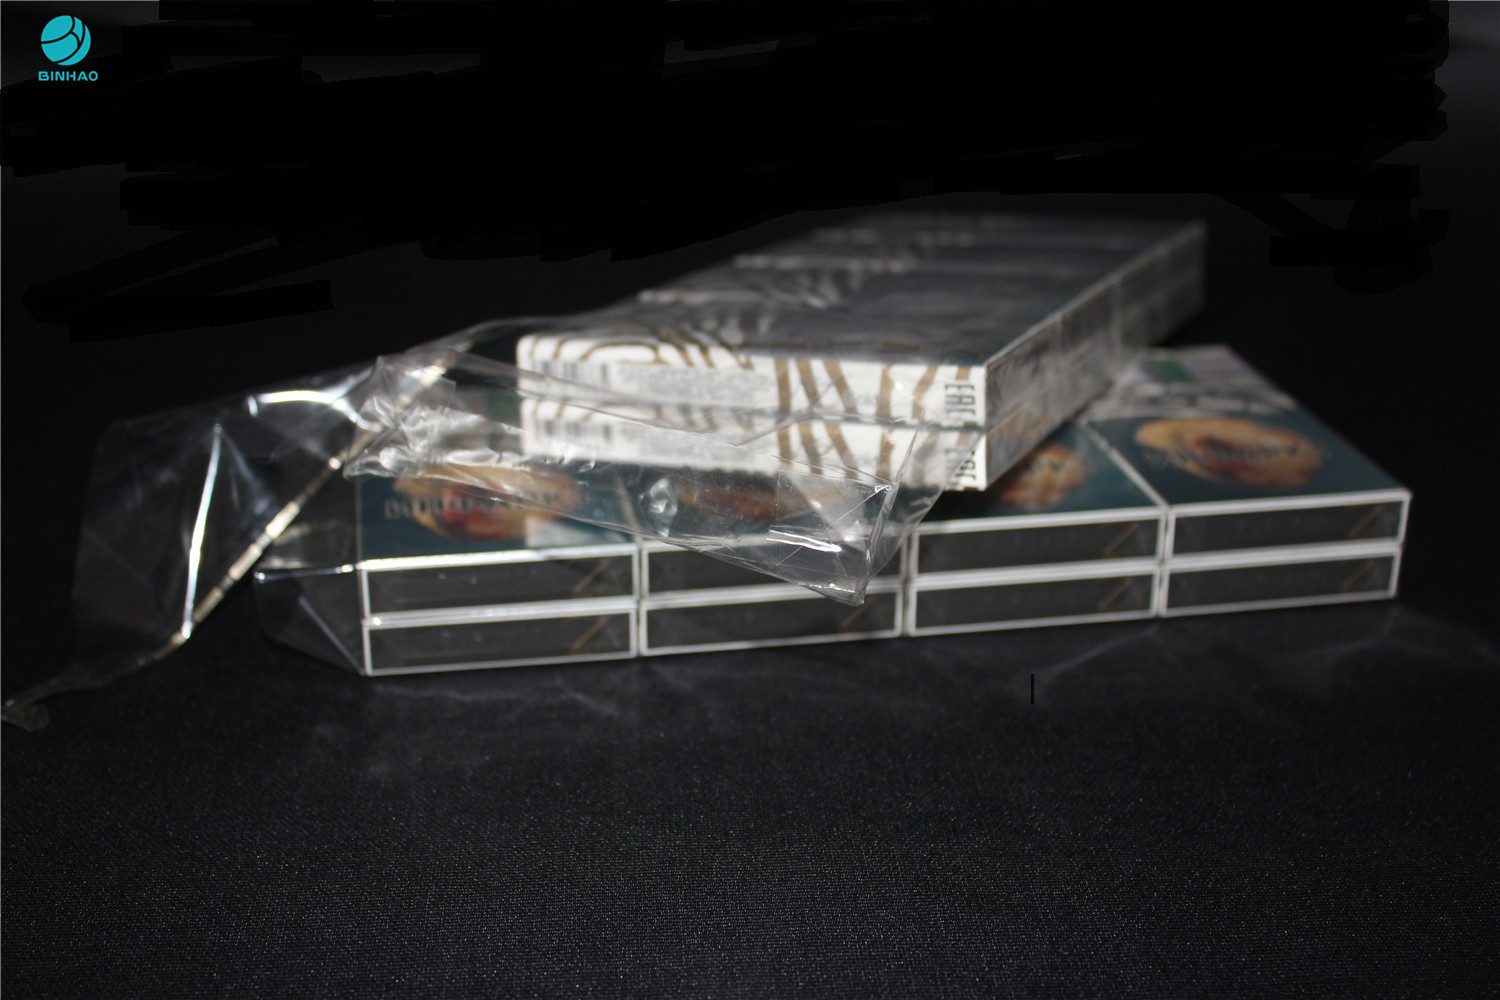 적나라한 담배 외부 상자 Wraper를 위한 25 미크론 수축 PVC 포장 영화